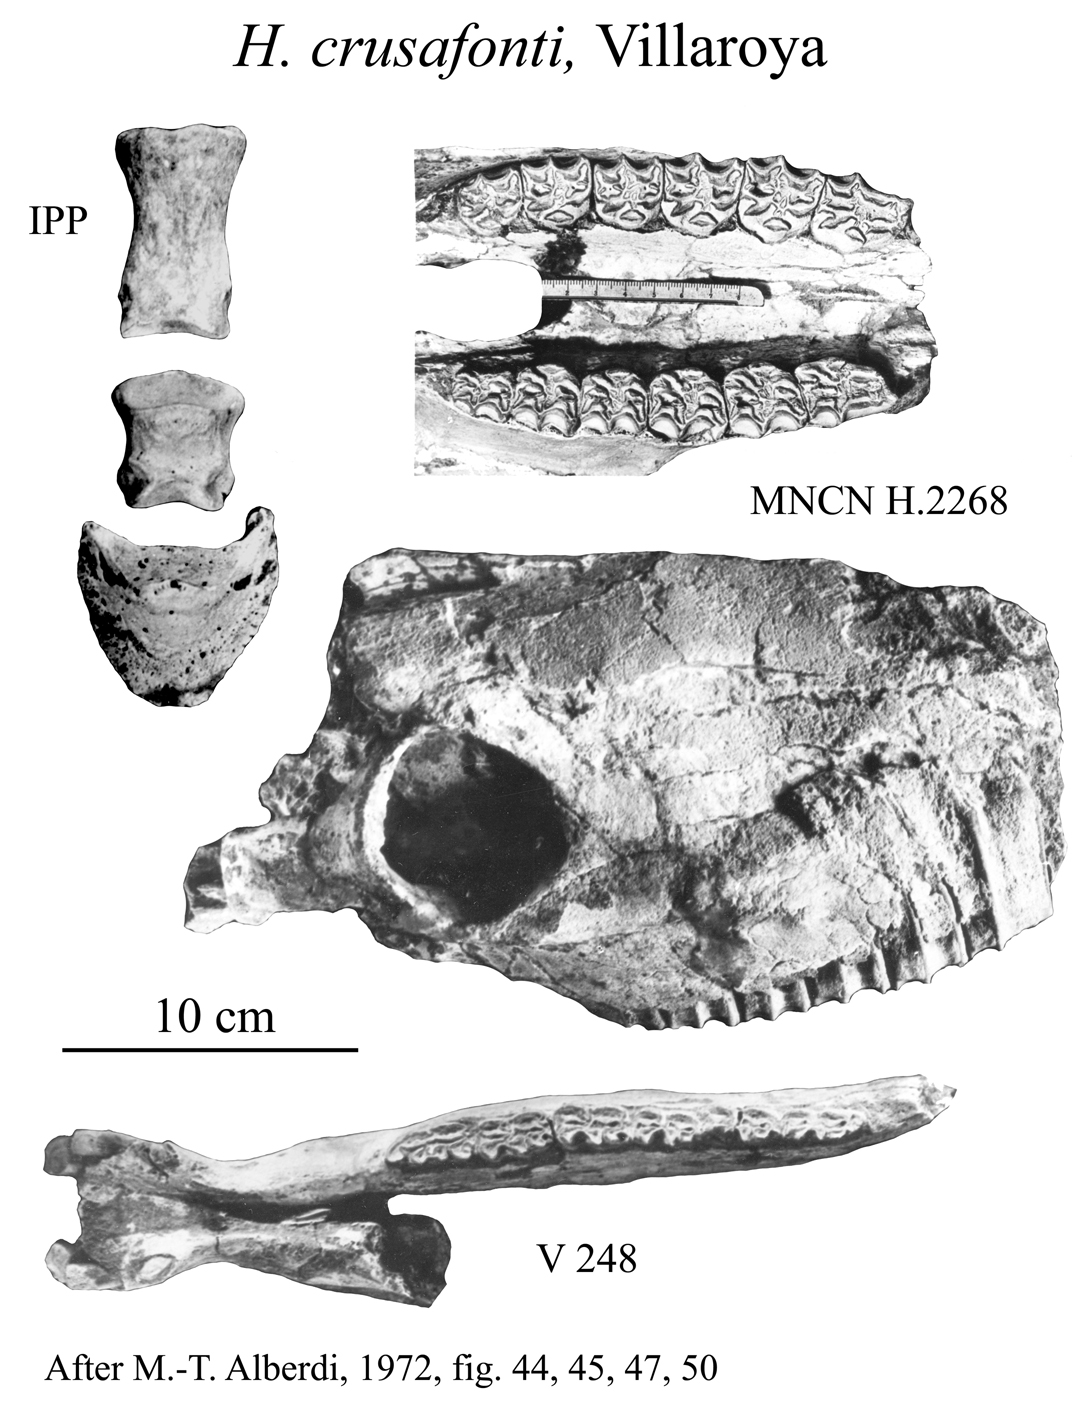 H. crusafonti, Cranium, Mandible, Phalanges